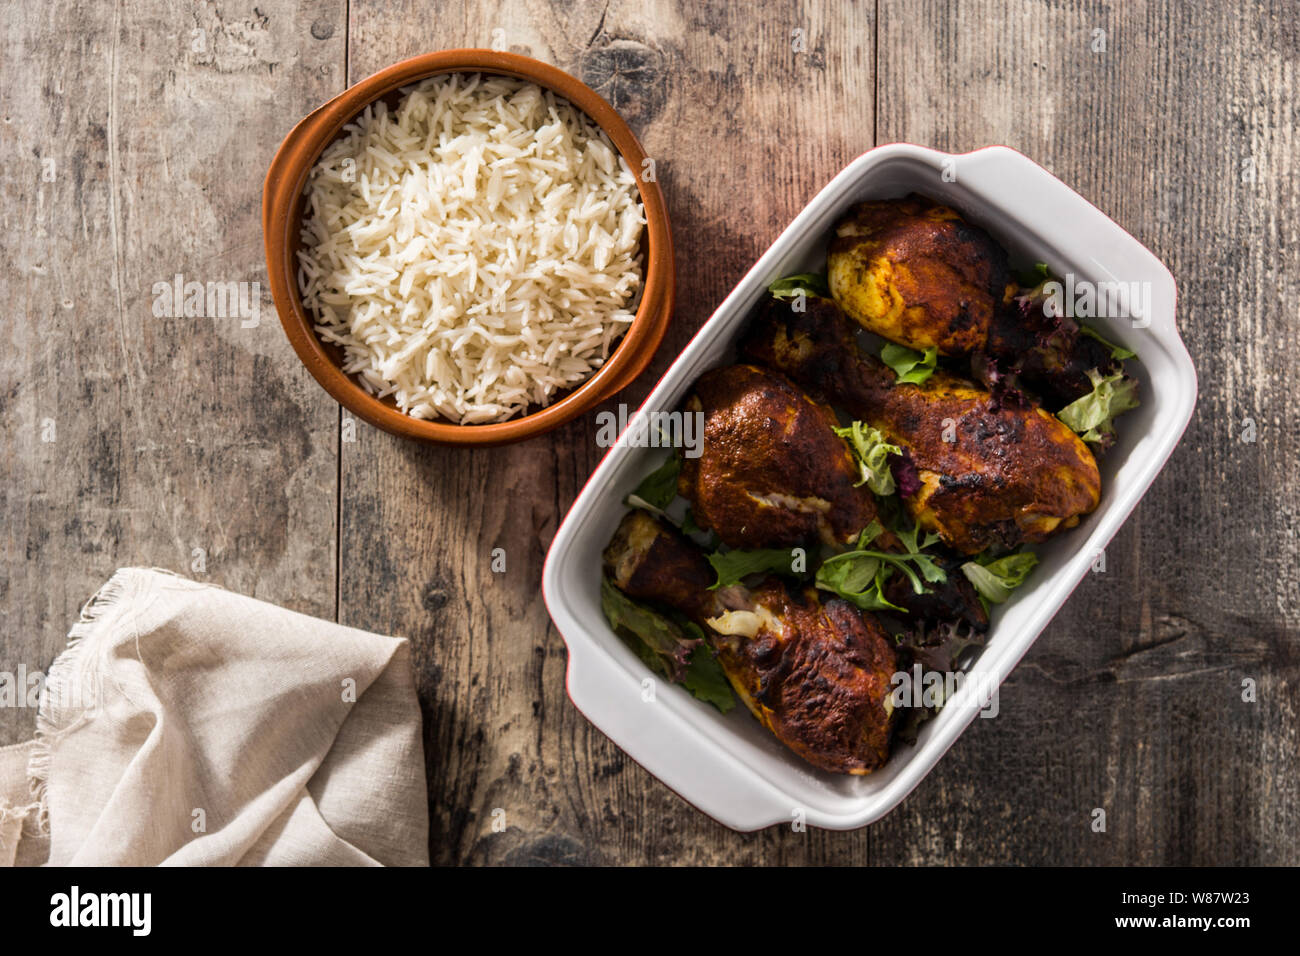 Poulet tandoori grillés avec du riz basmati sur table en bois. Vue d'en haut Banque D'Images